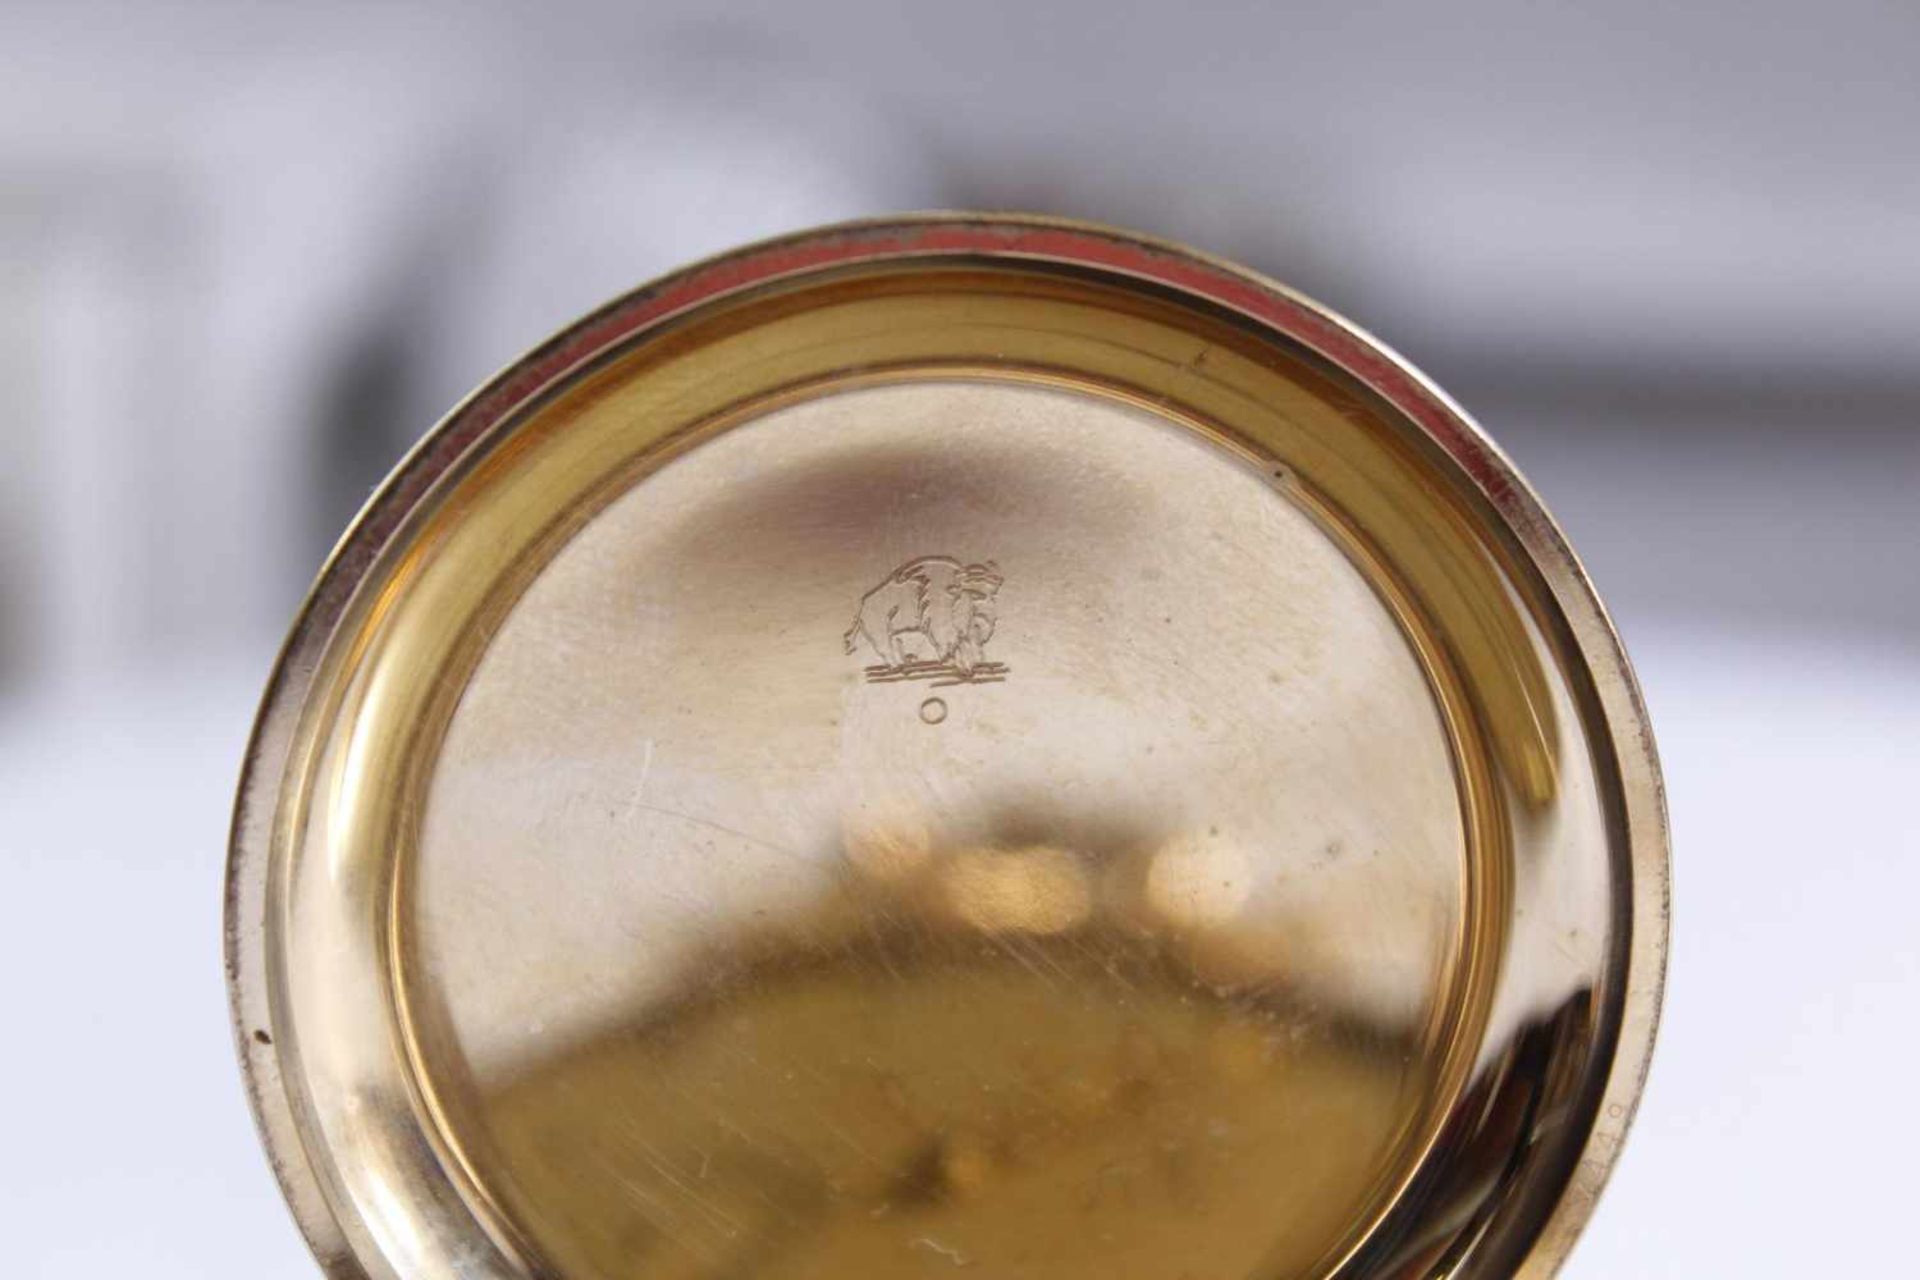 Pavor Sprungdeckeltaschenuhr mit Uhrenkette, vergoldet - Image 3 of 4